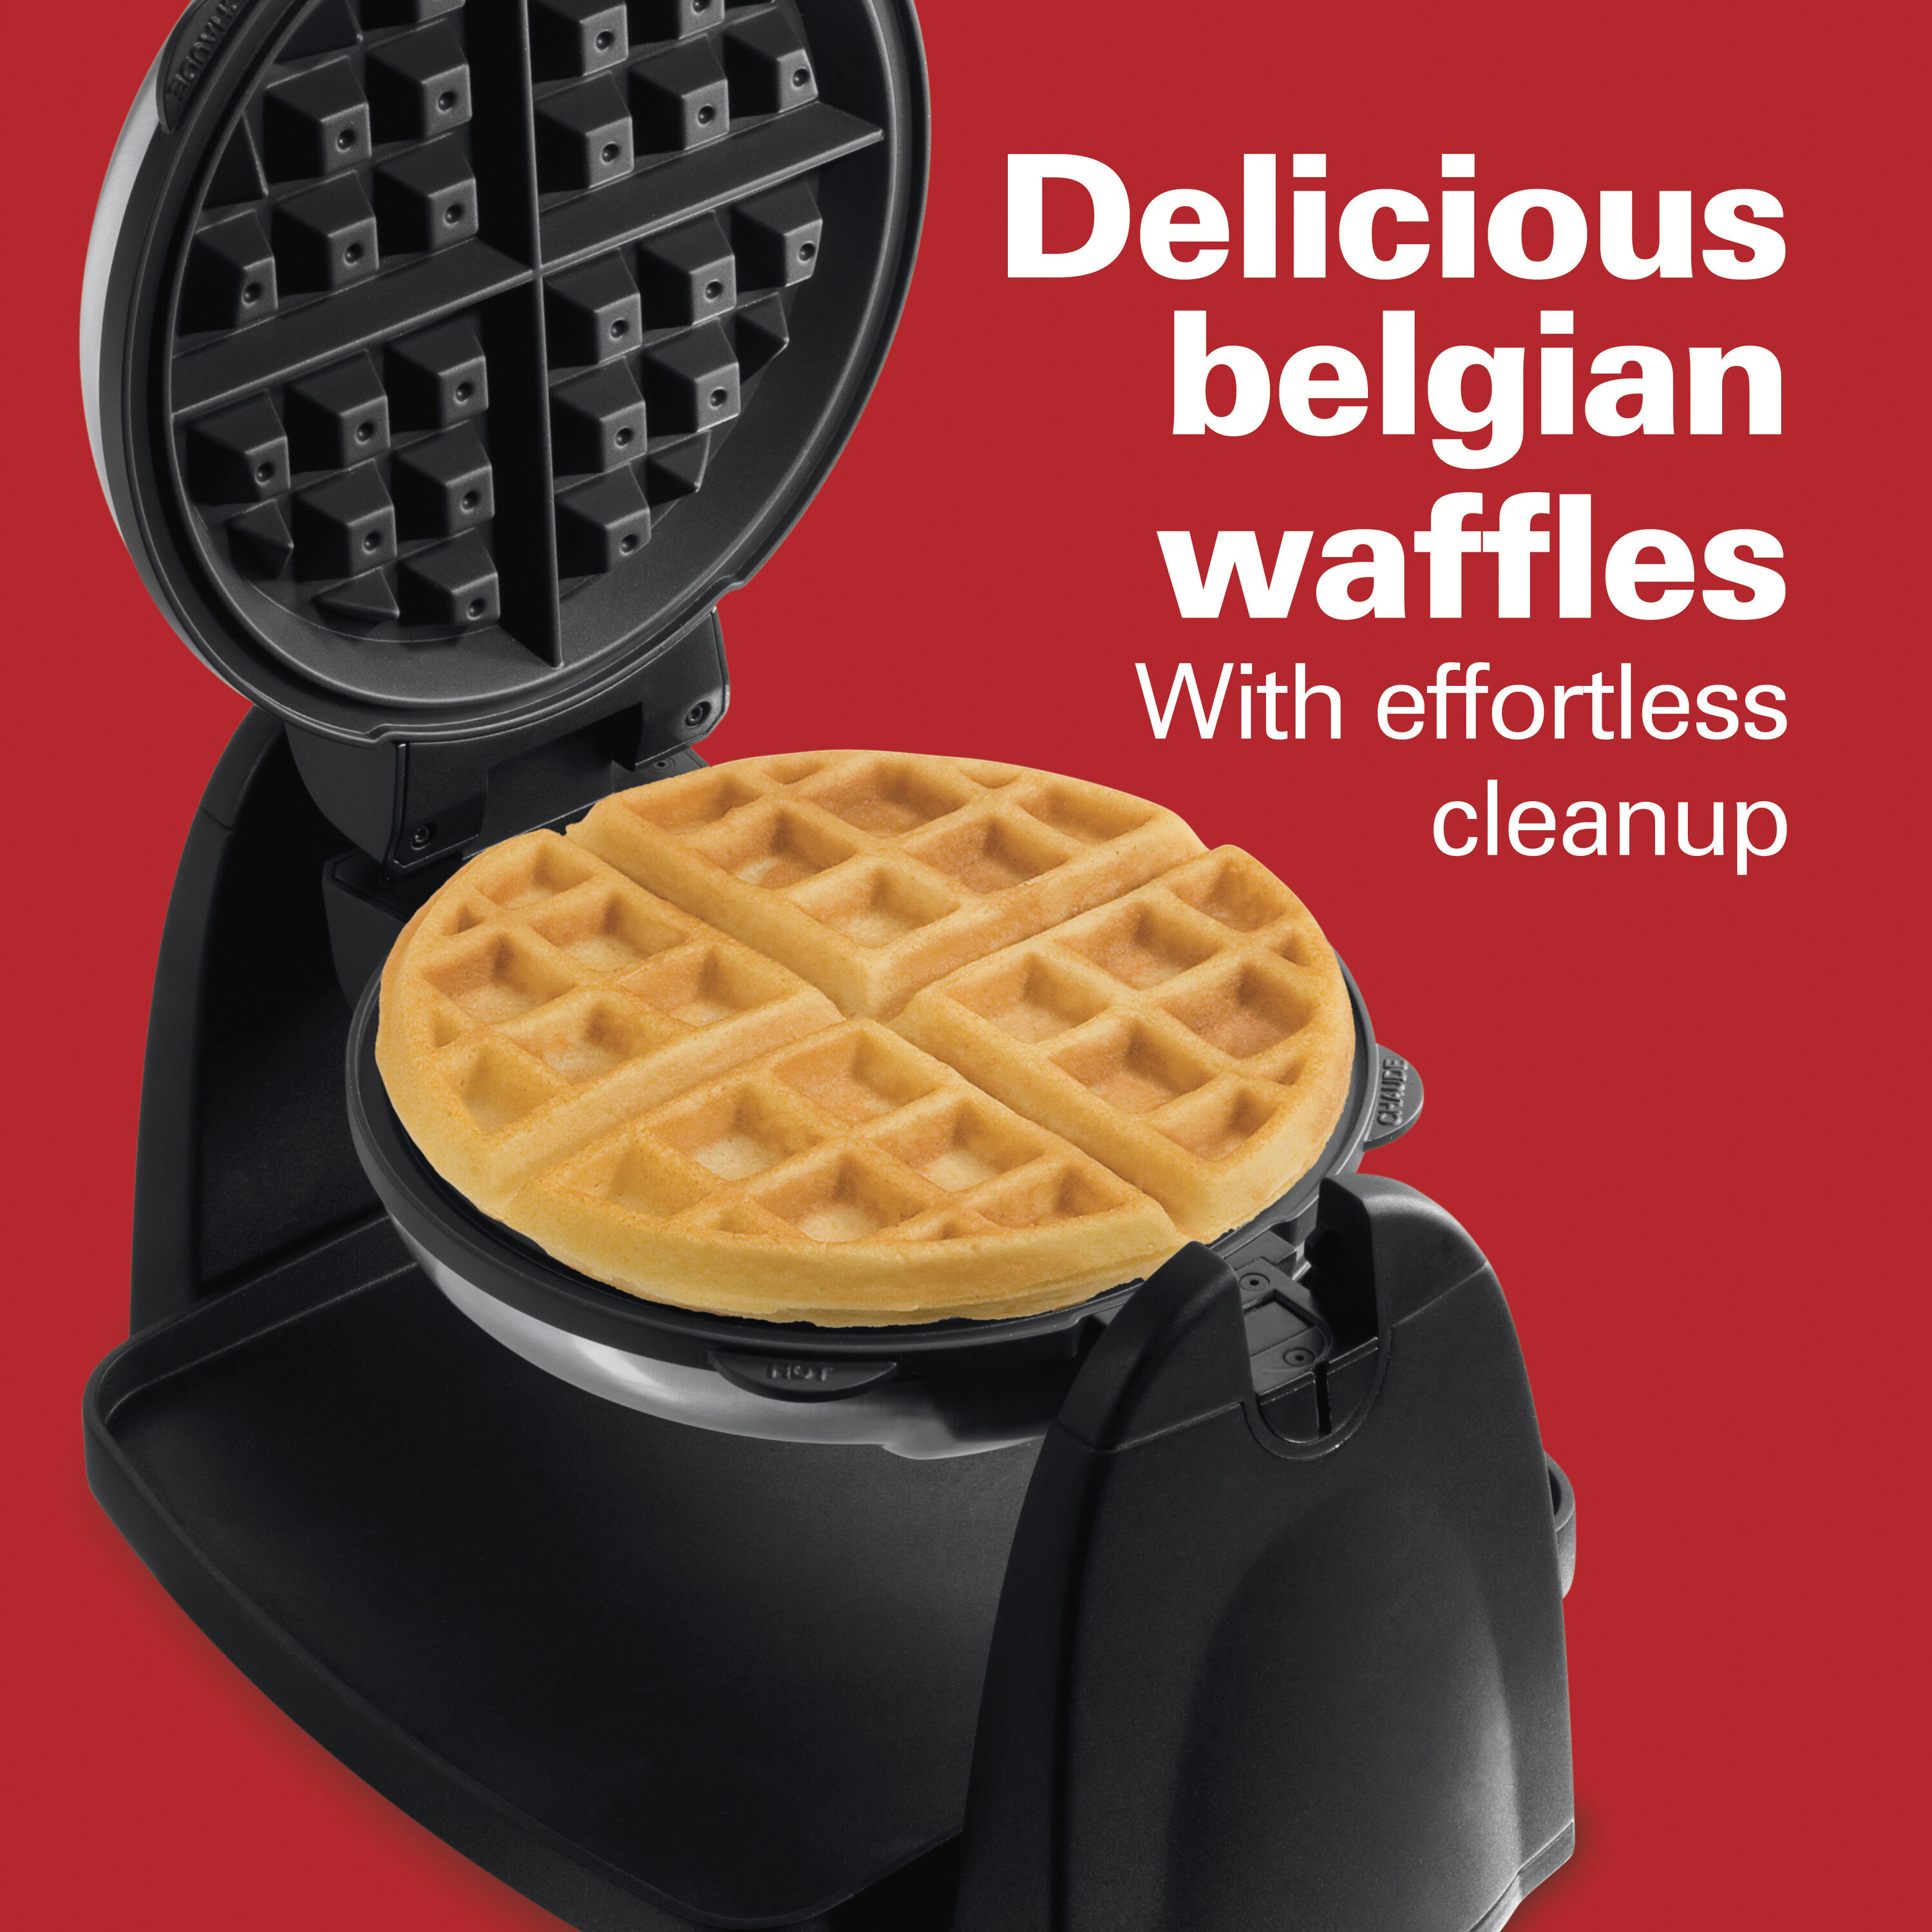 Nostalgia Mflpwf5aq MyMini Flip Belgian Waffle Maker, Aqua